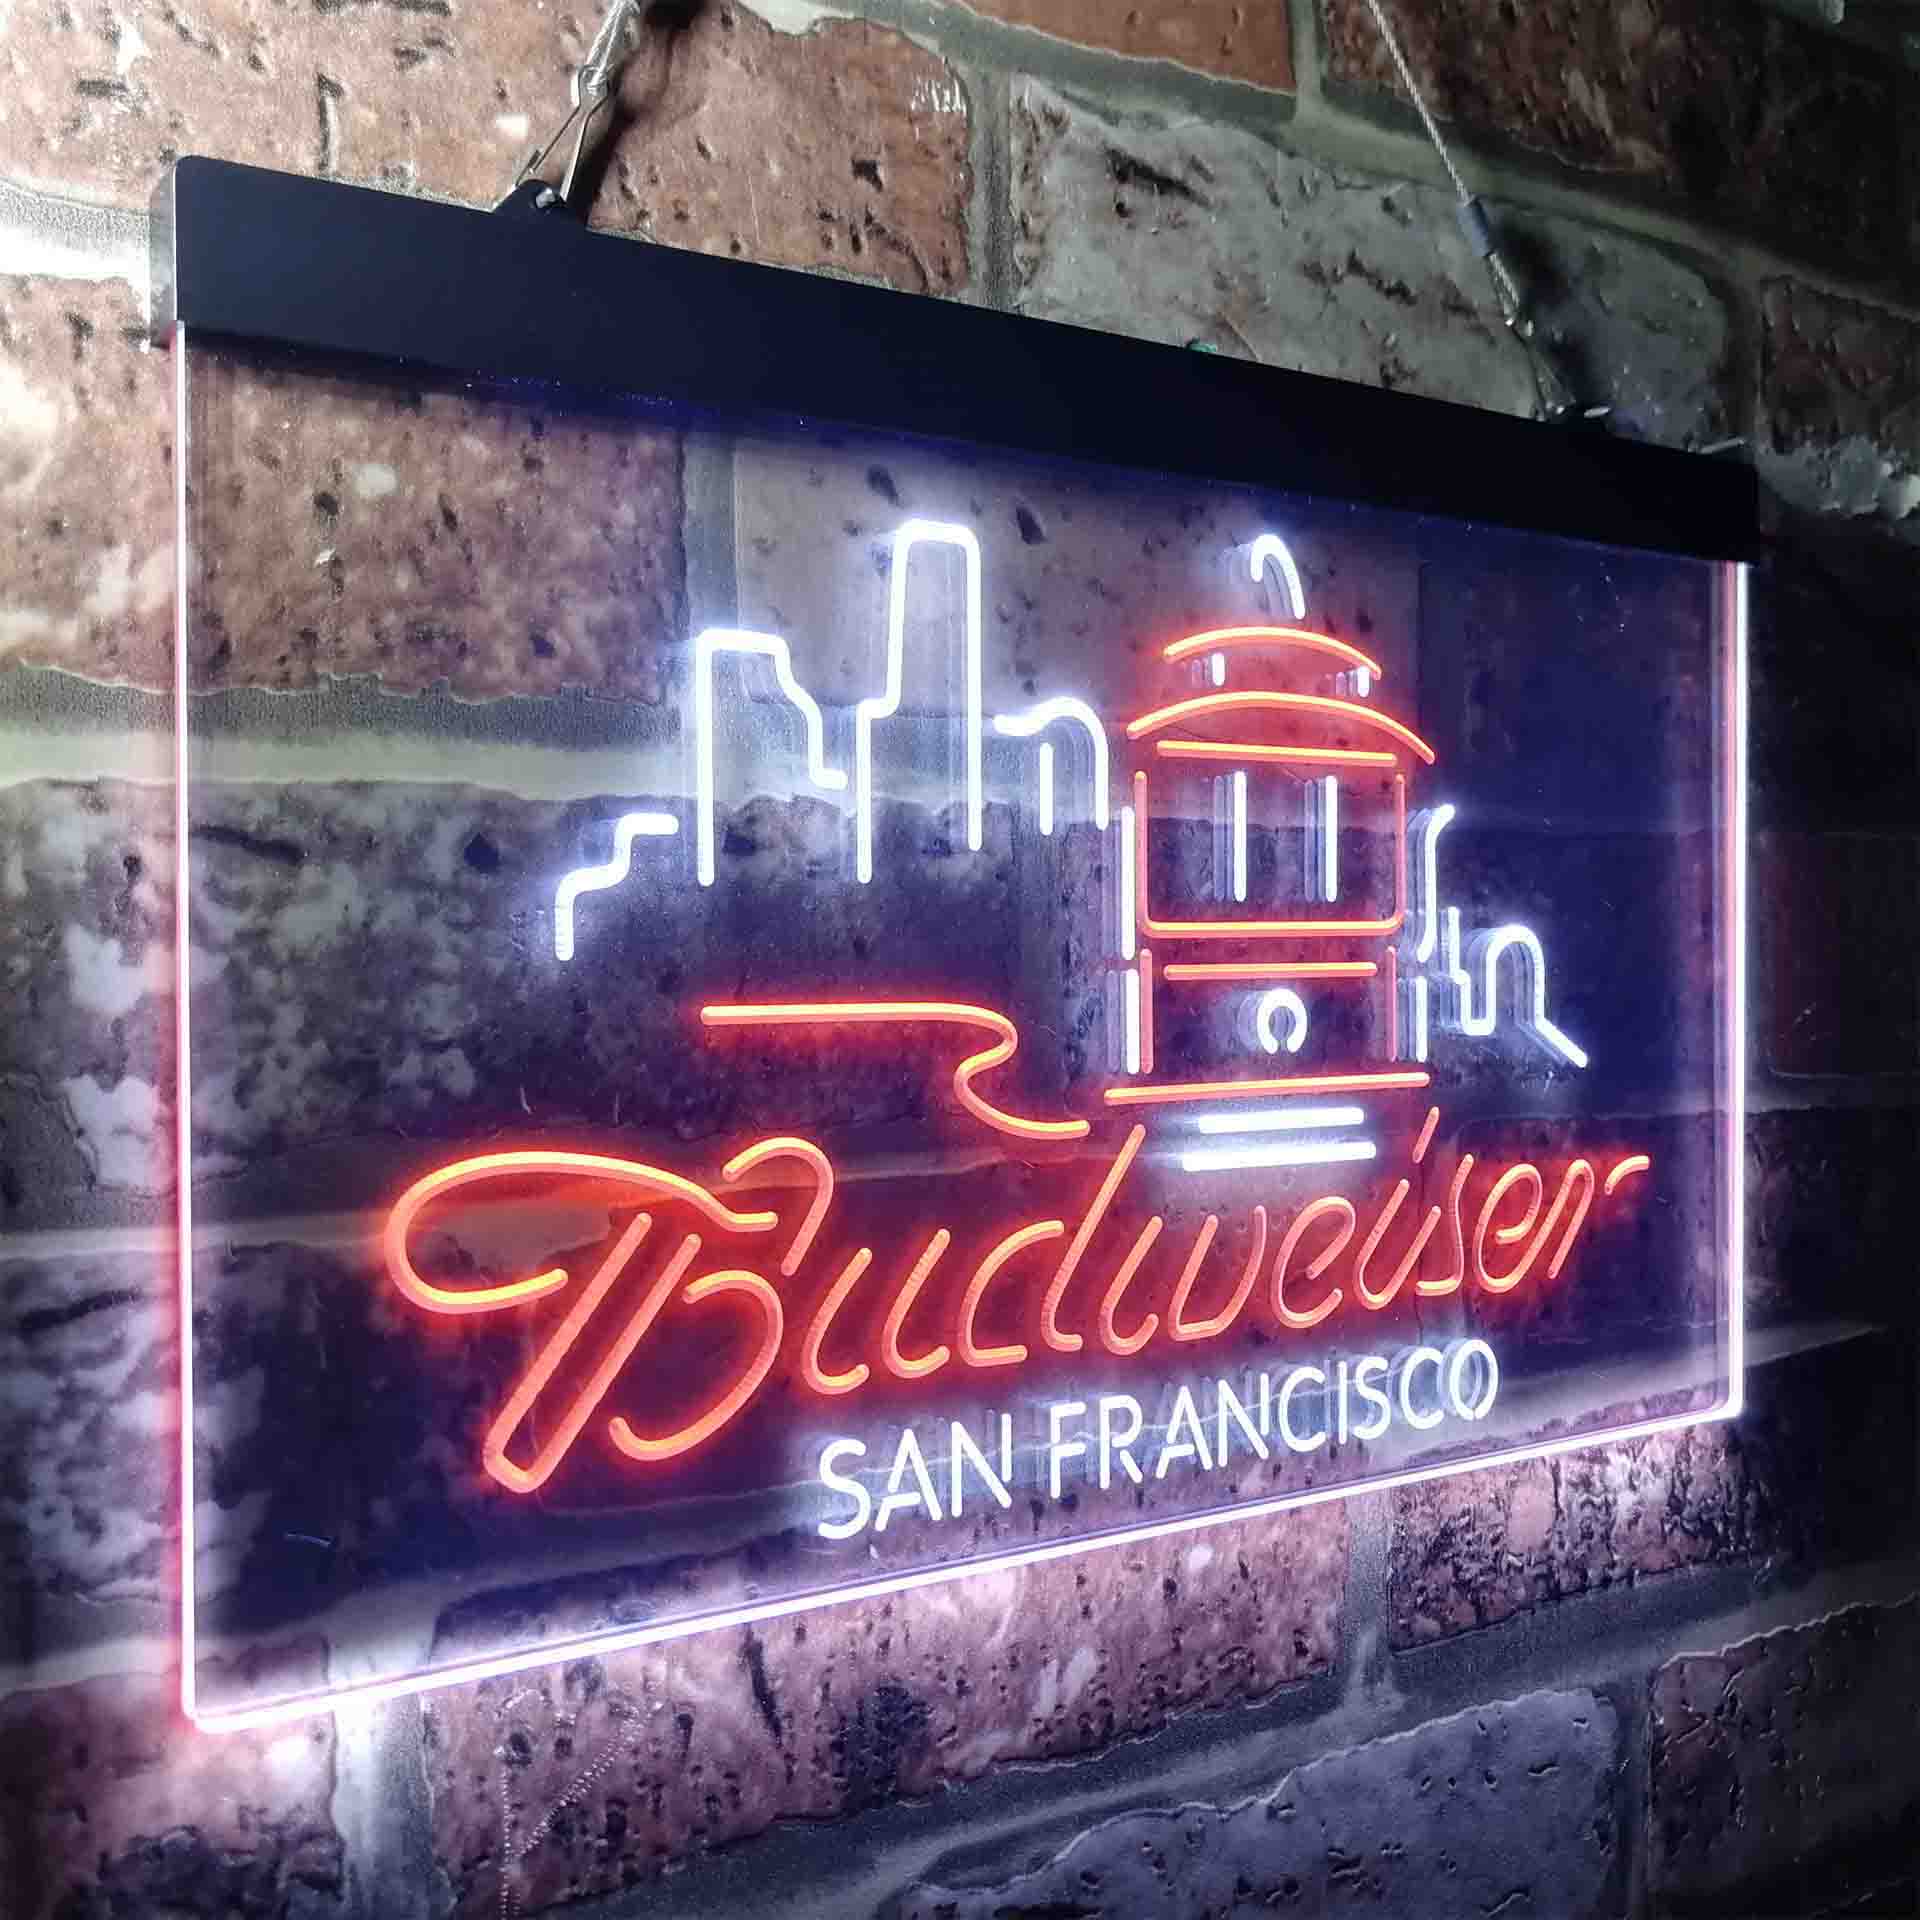 San Francisco Budweiser Beer Neon-Like LED Sign - ProLedSign